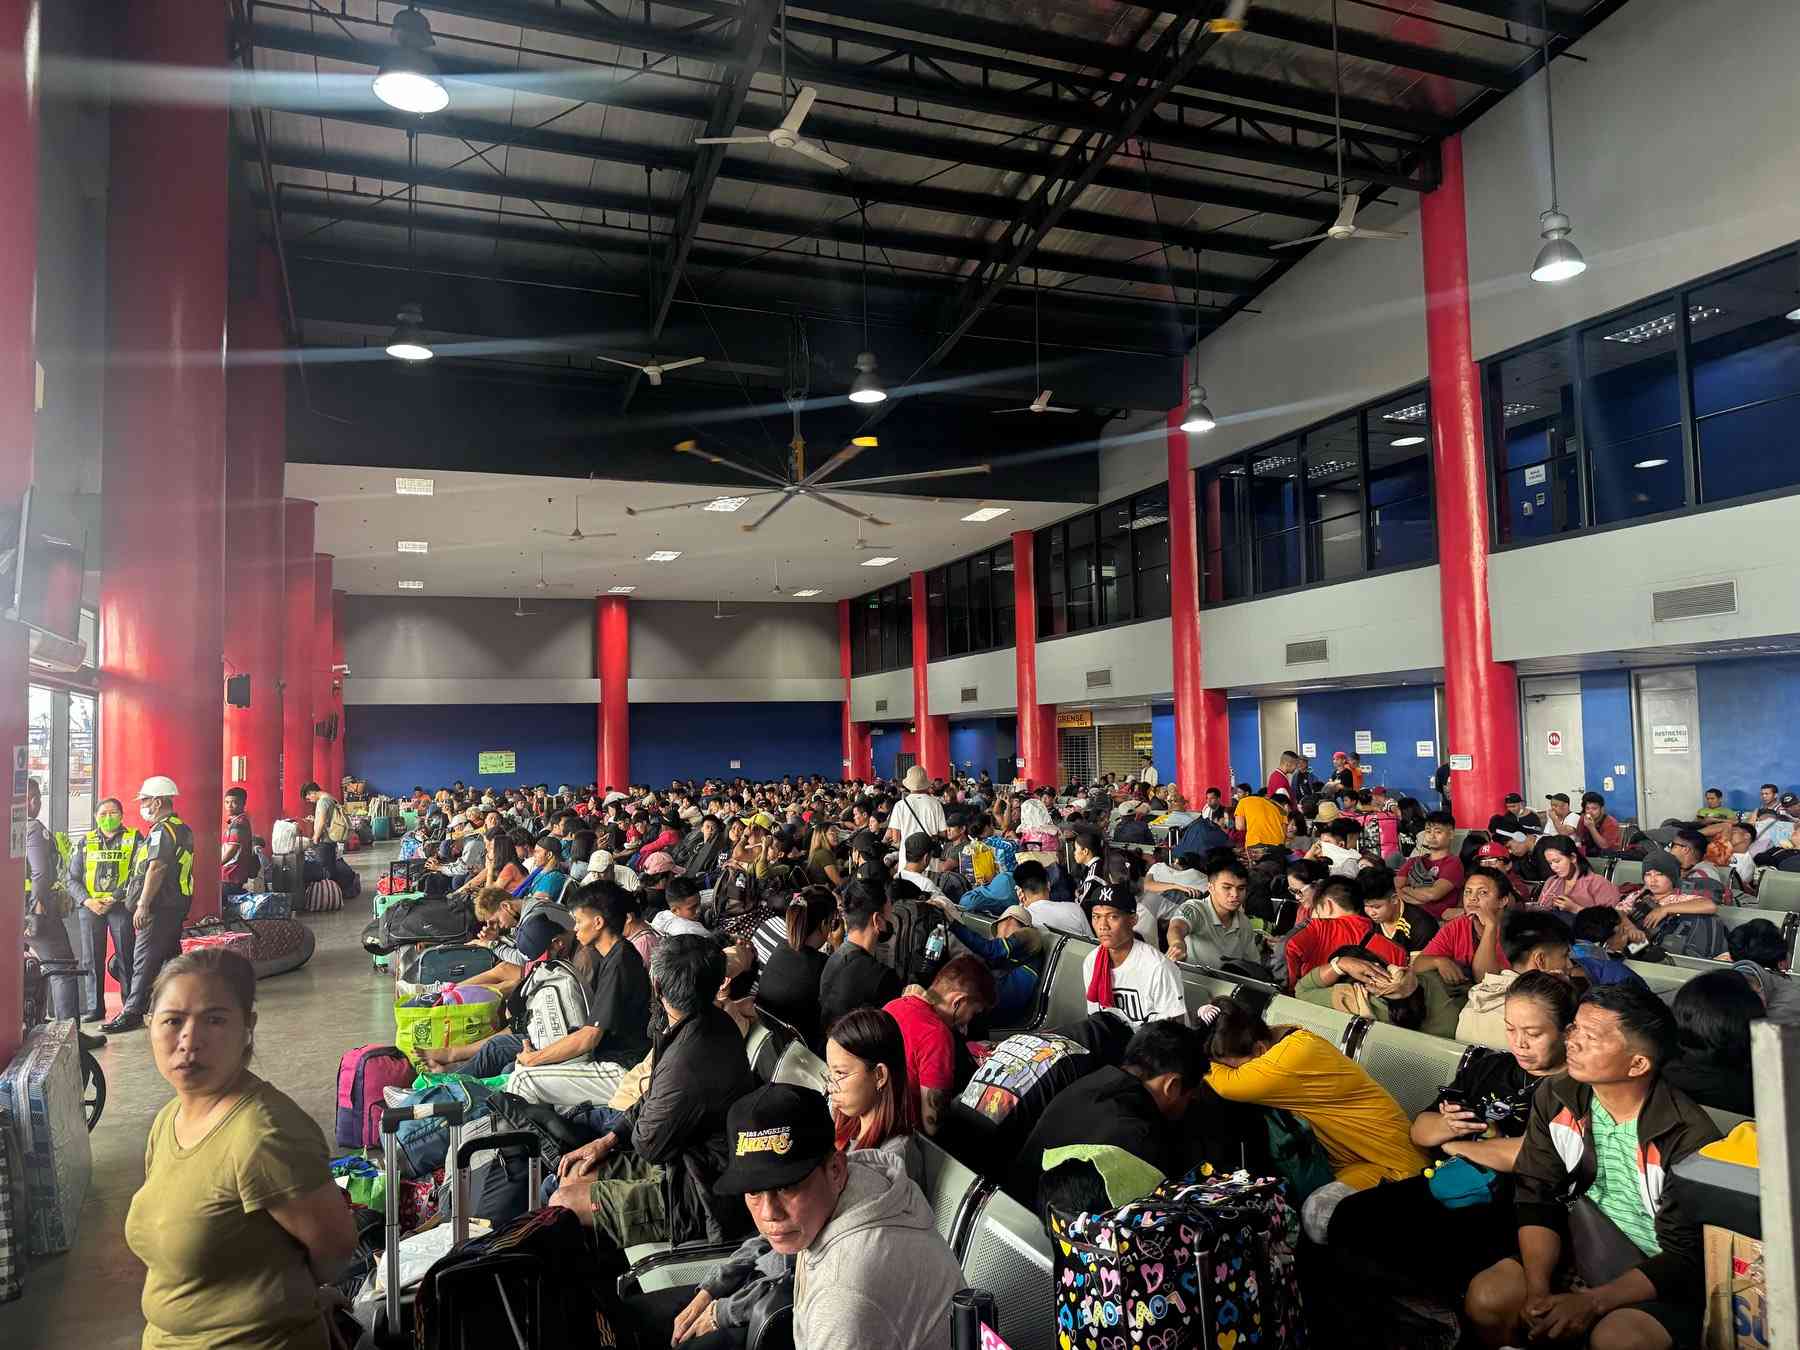 2.1 million Pinoys expected to travel on Semana Santa - PPA